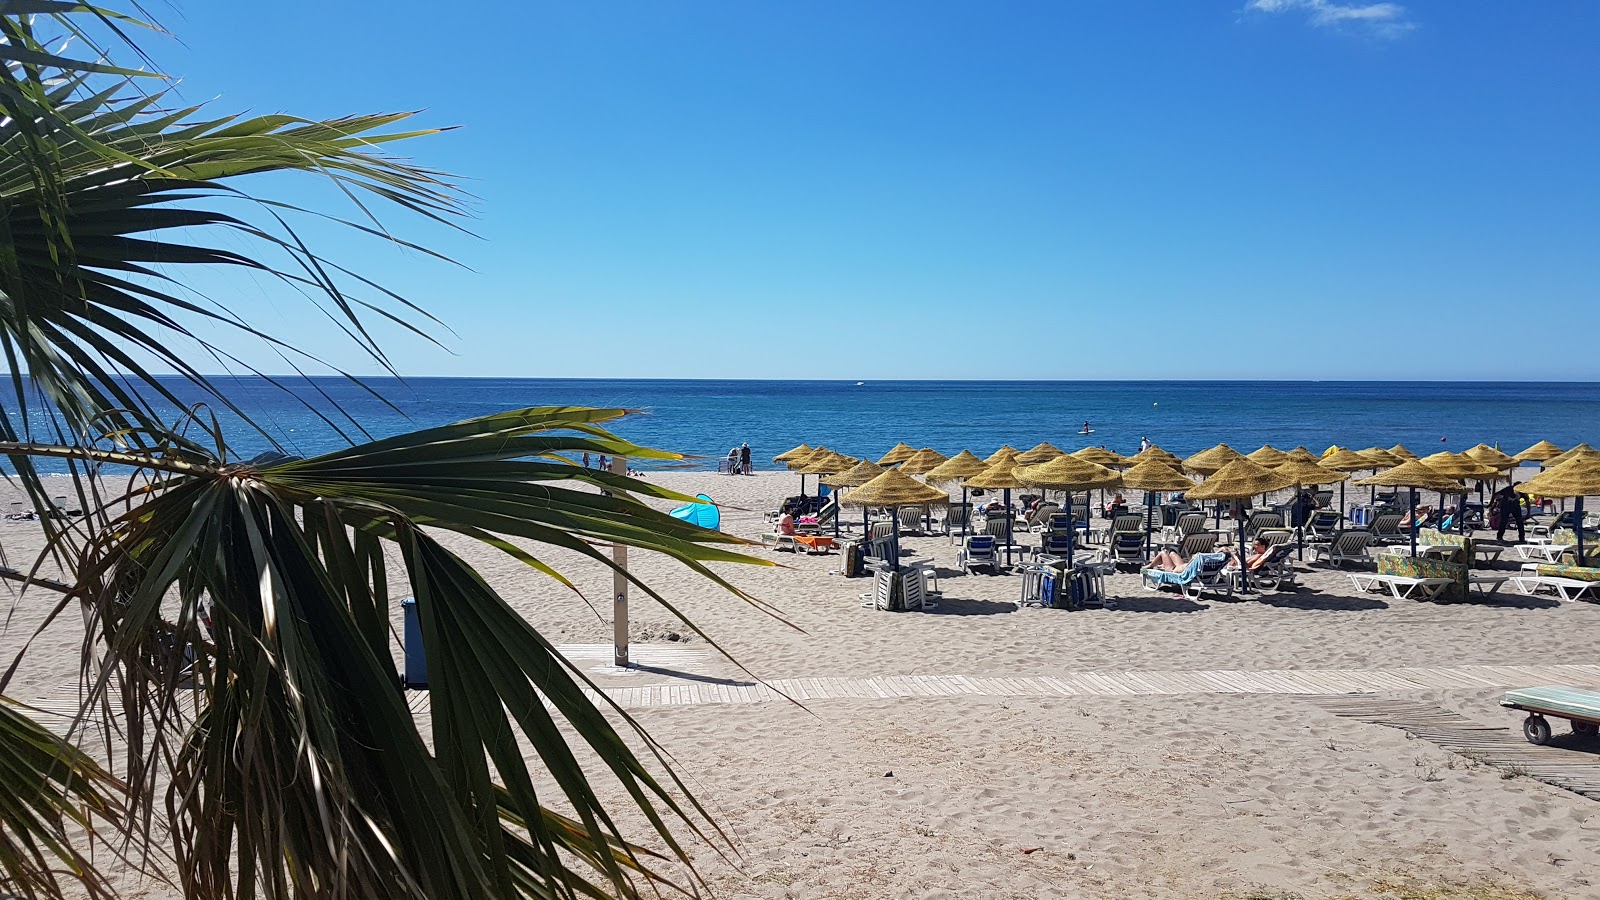 Playa de Carvajal'in fotoğrafı çok temiz temizlik seviyesi ile